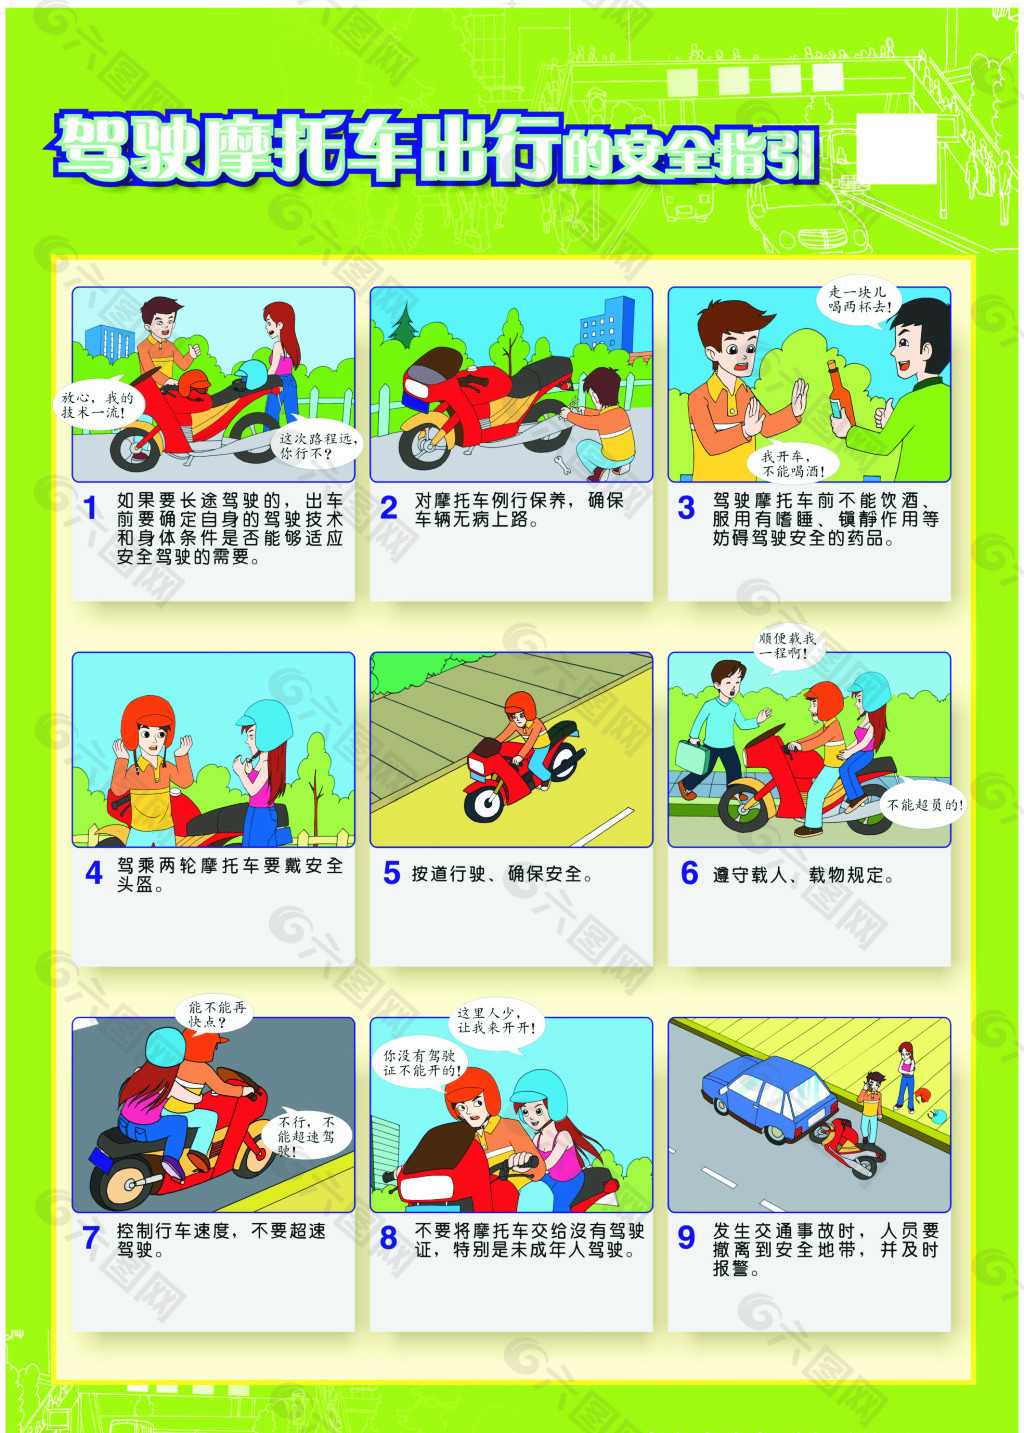 摩托车道路行驶规则图片